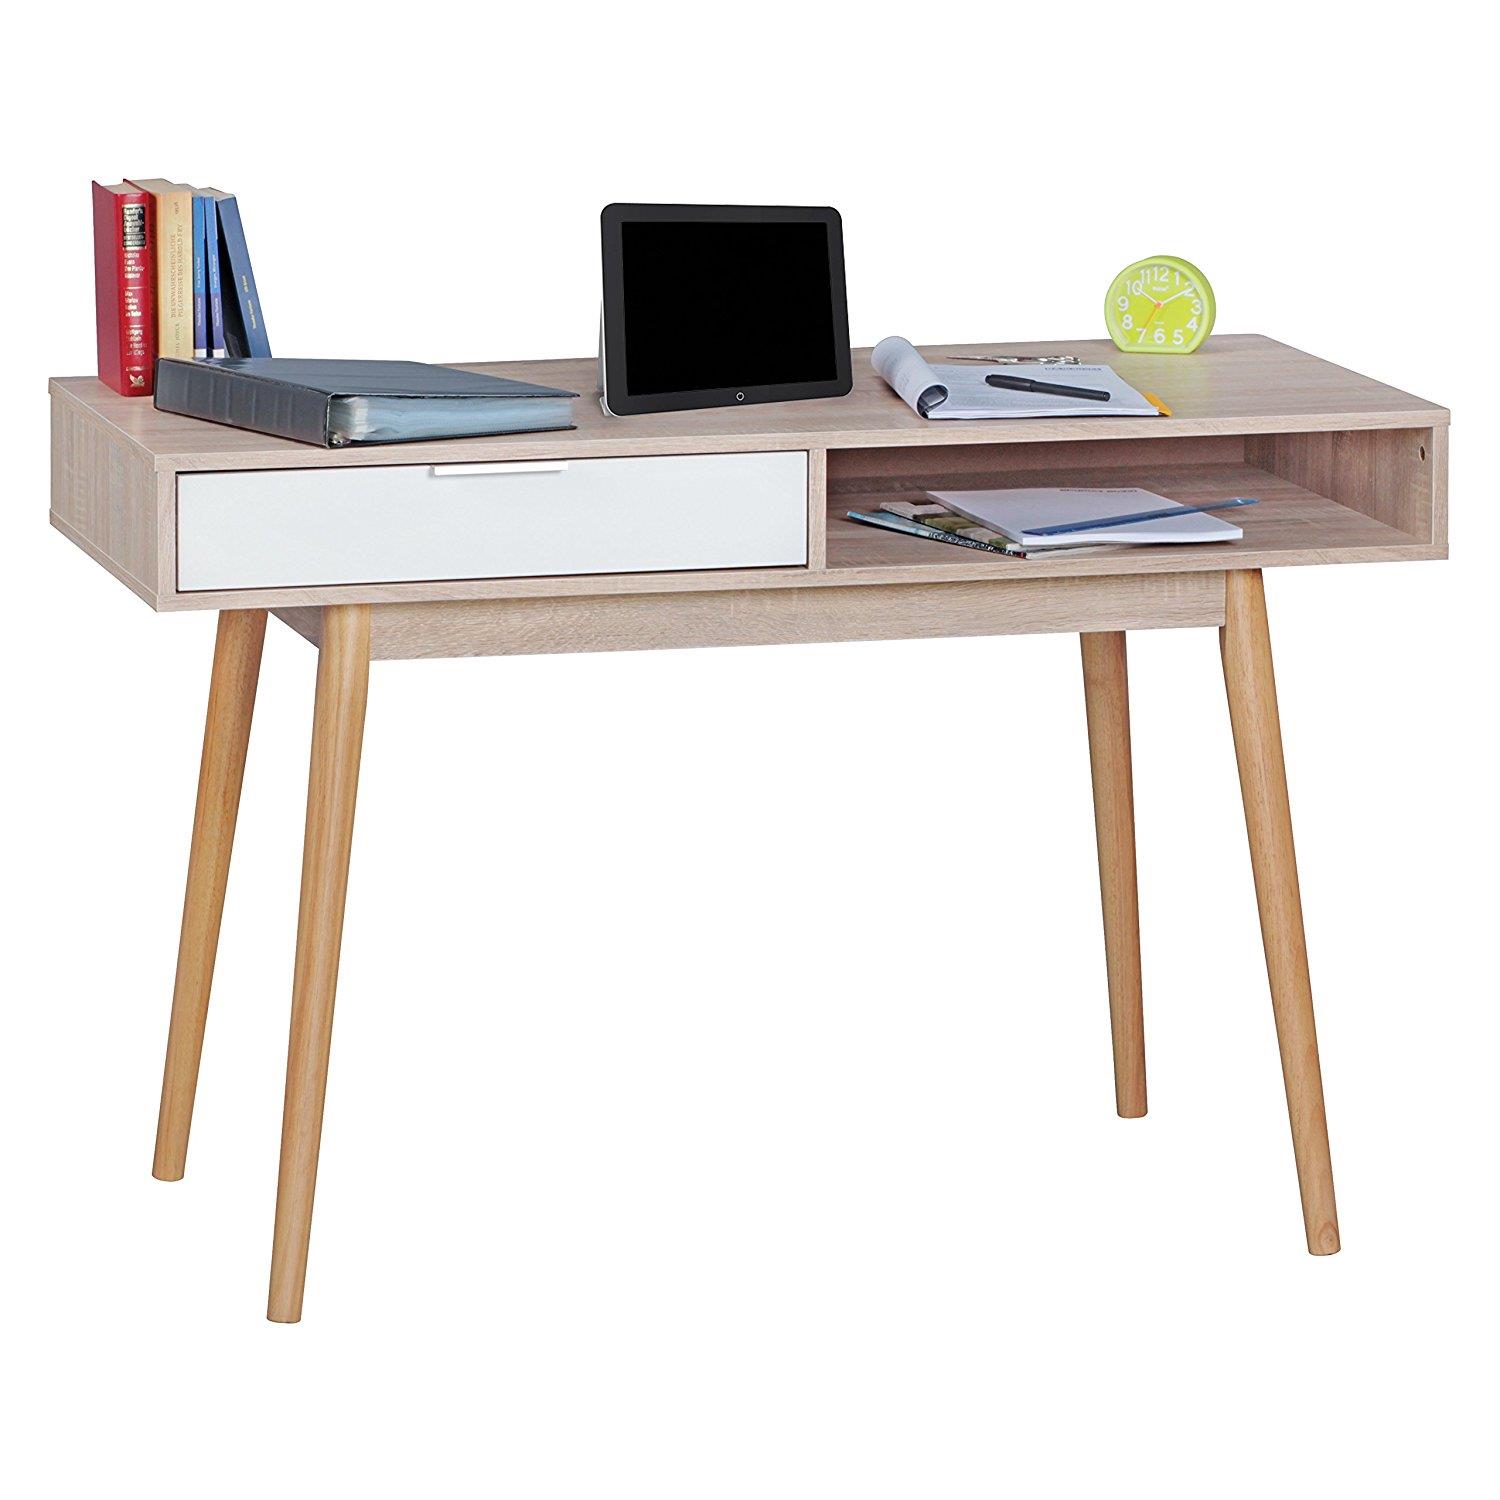 Computertisch BERRY, skandinavisches Design, Maße 120x55x79 cm, aus Eichenholz, Farbe Eiche